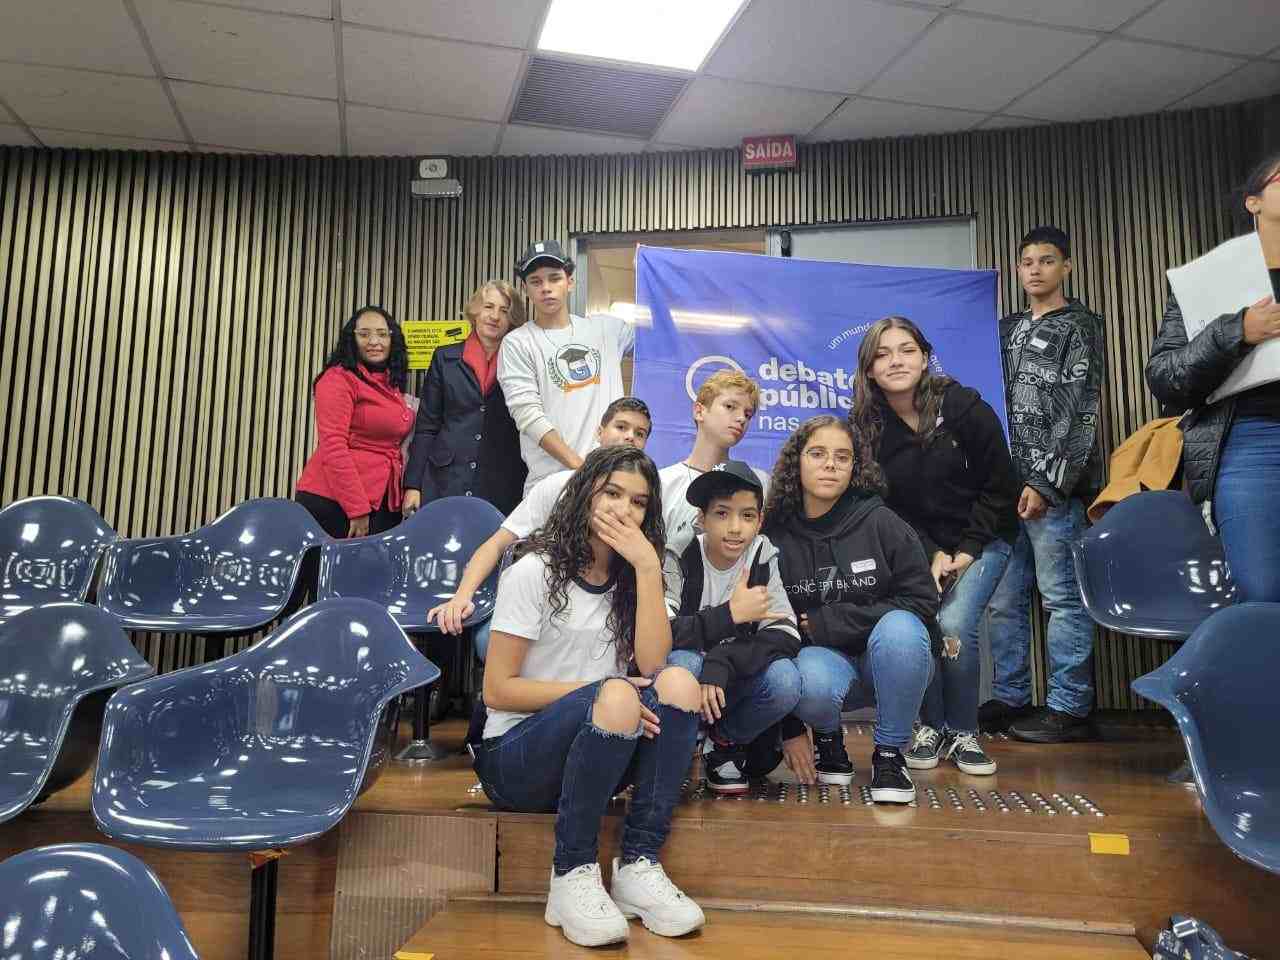 Grupo de jovens posa para a foto em um auditório. Ao fundo, dois deles seguram a bandeira dos Debates Públicos nas Escolas